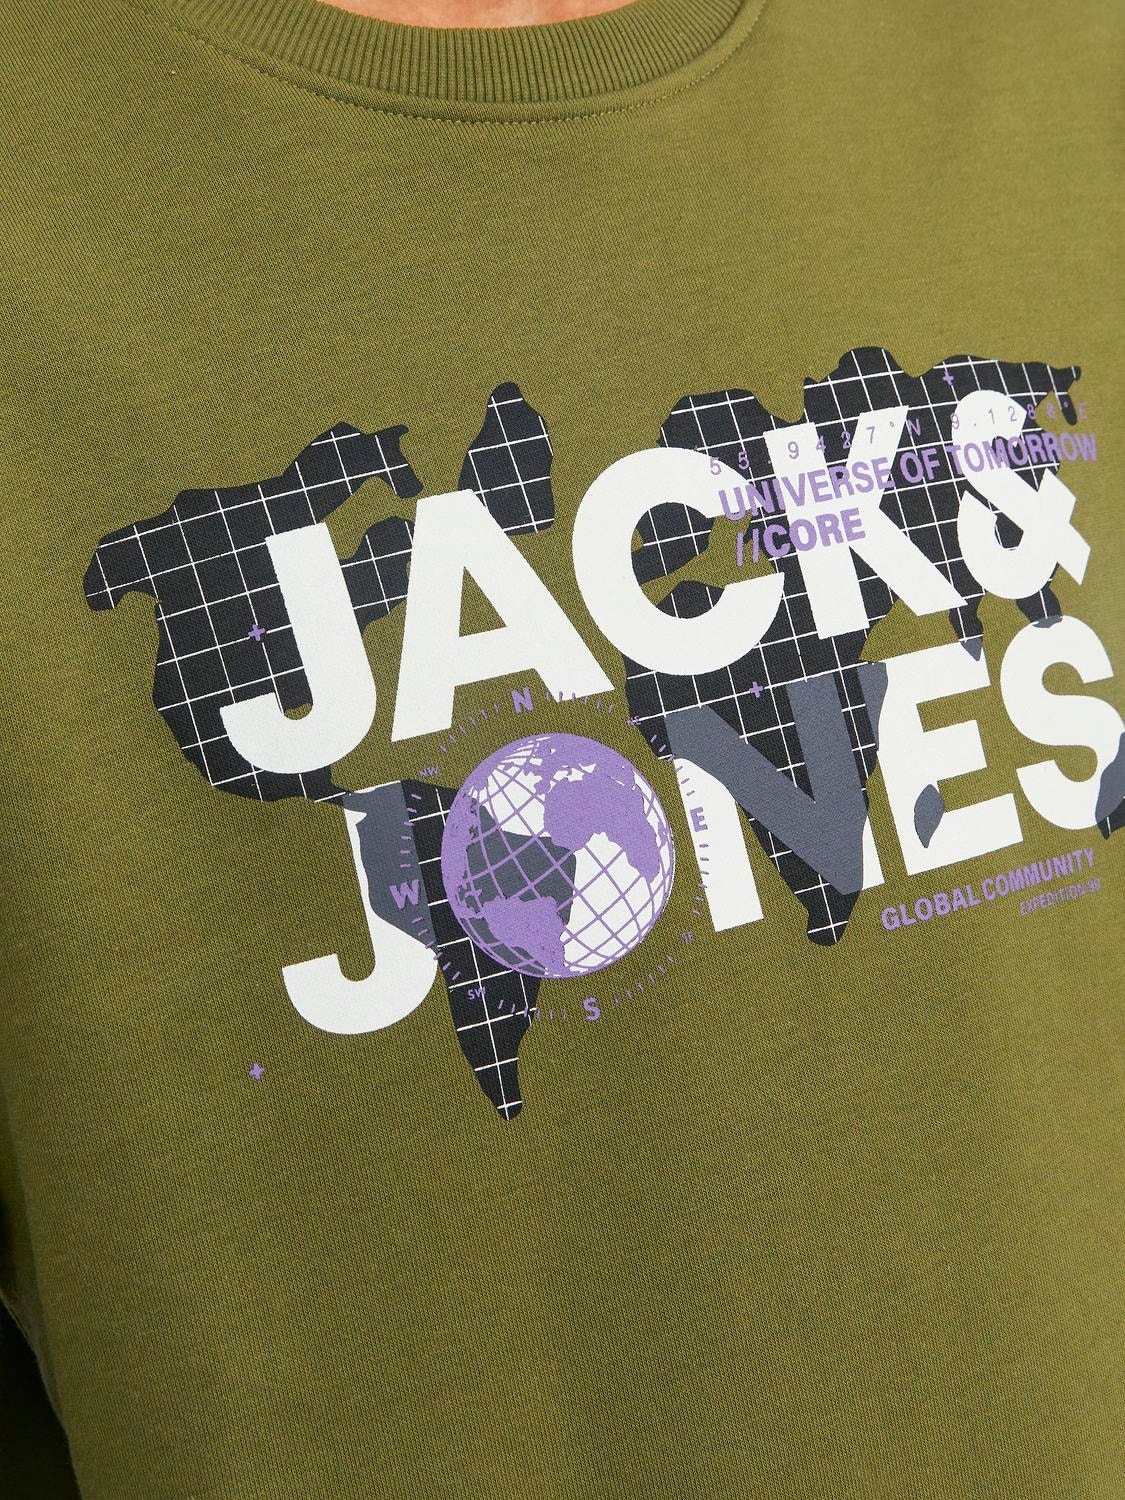 Jack & Jones Logo Sweatshirt med rund hals -Olive Branch - 12240211